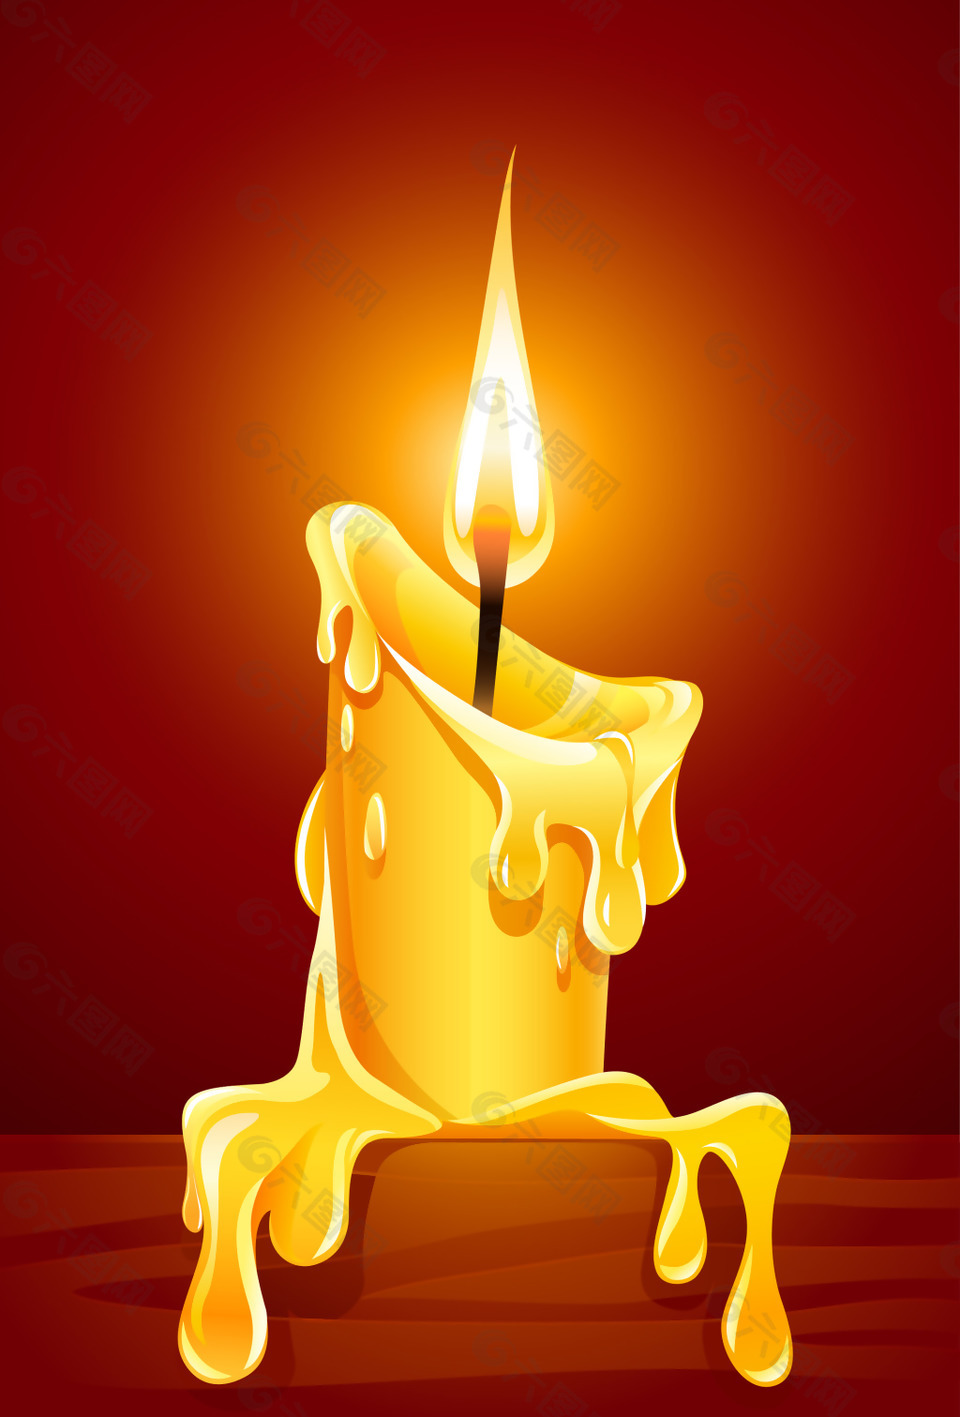 矢量黄色蜡烛火焰红底背景素材